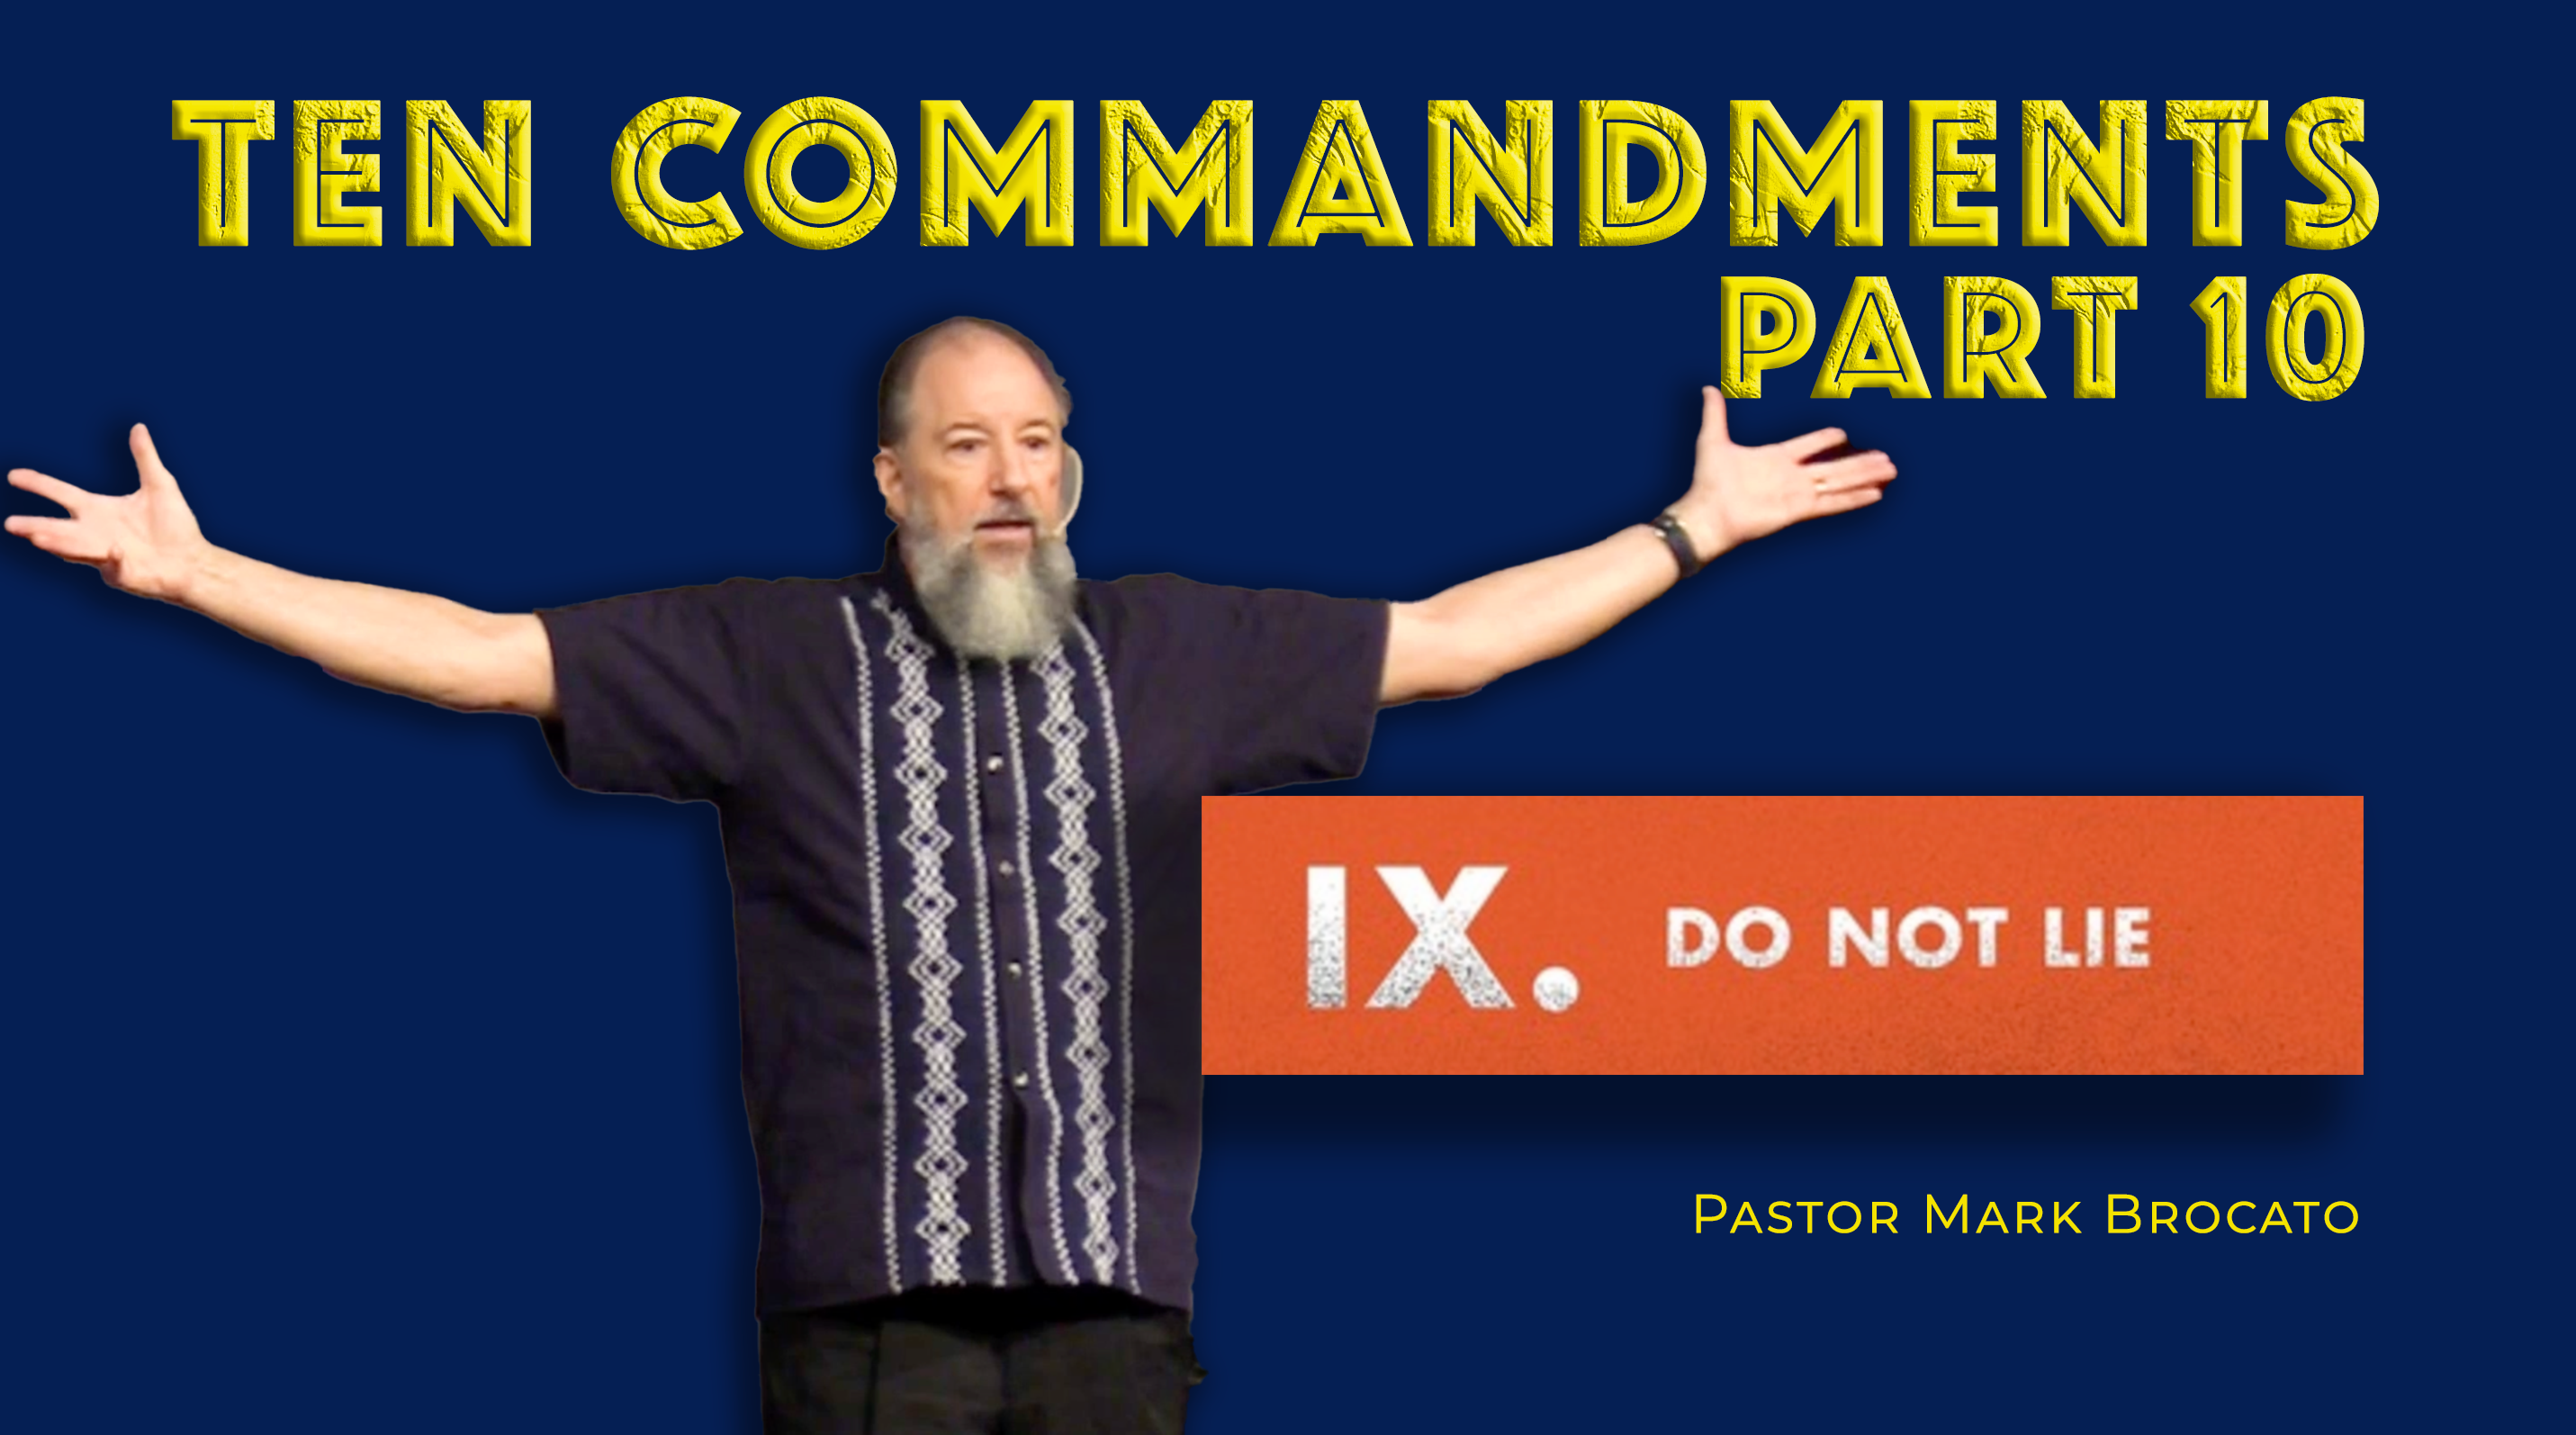 Commandment IX